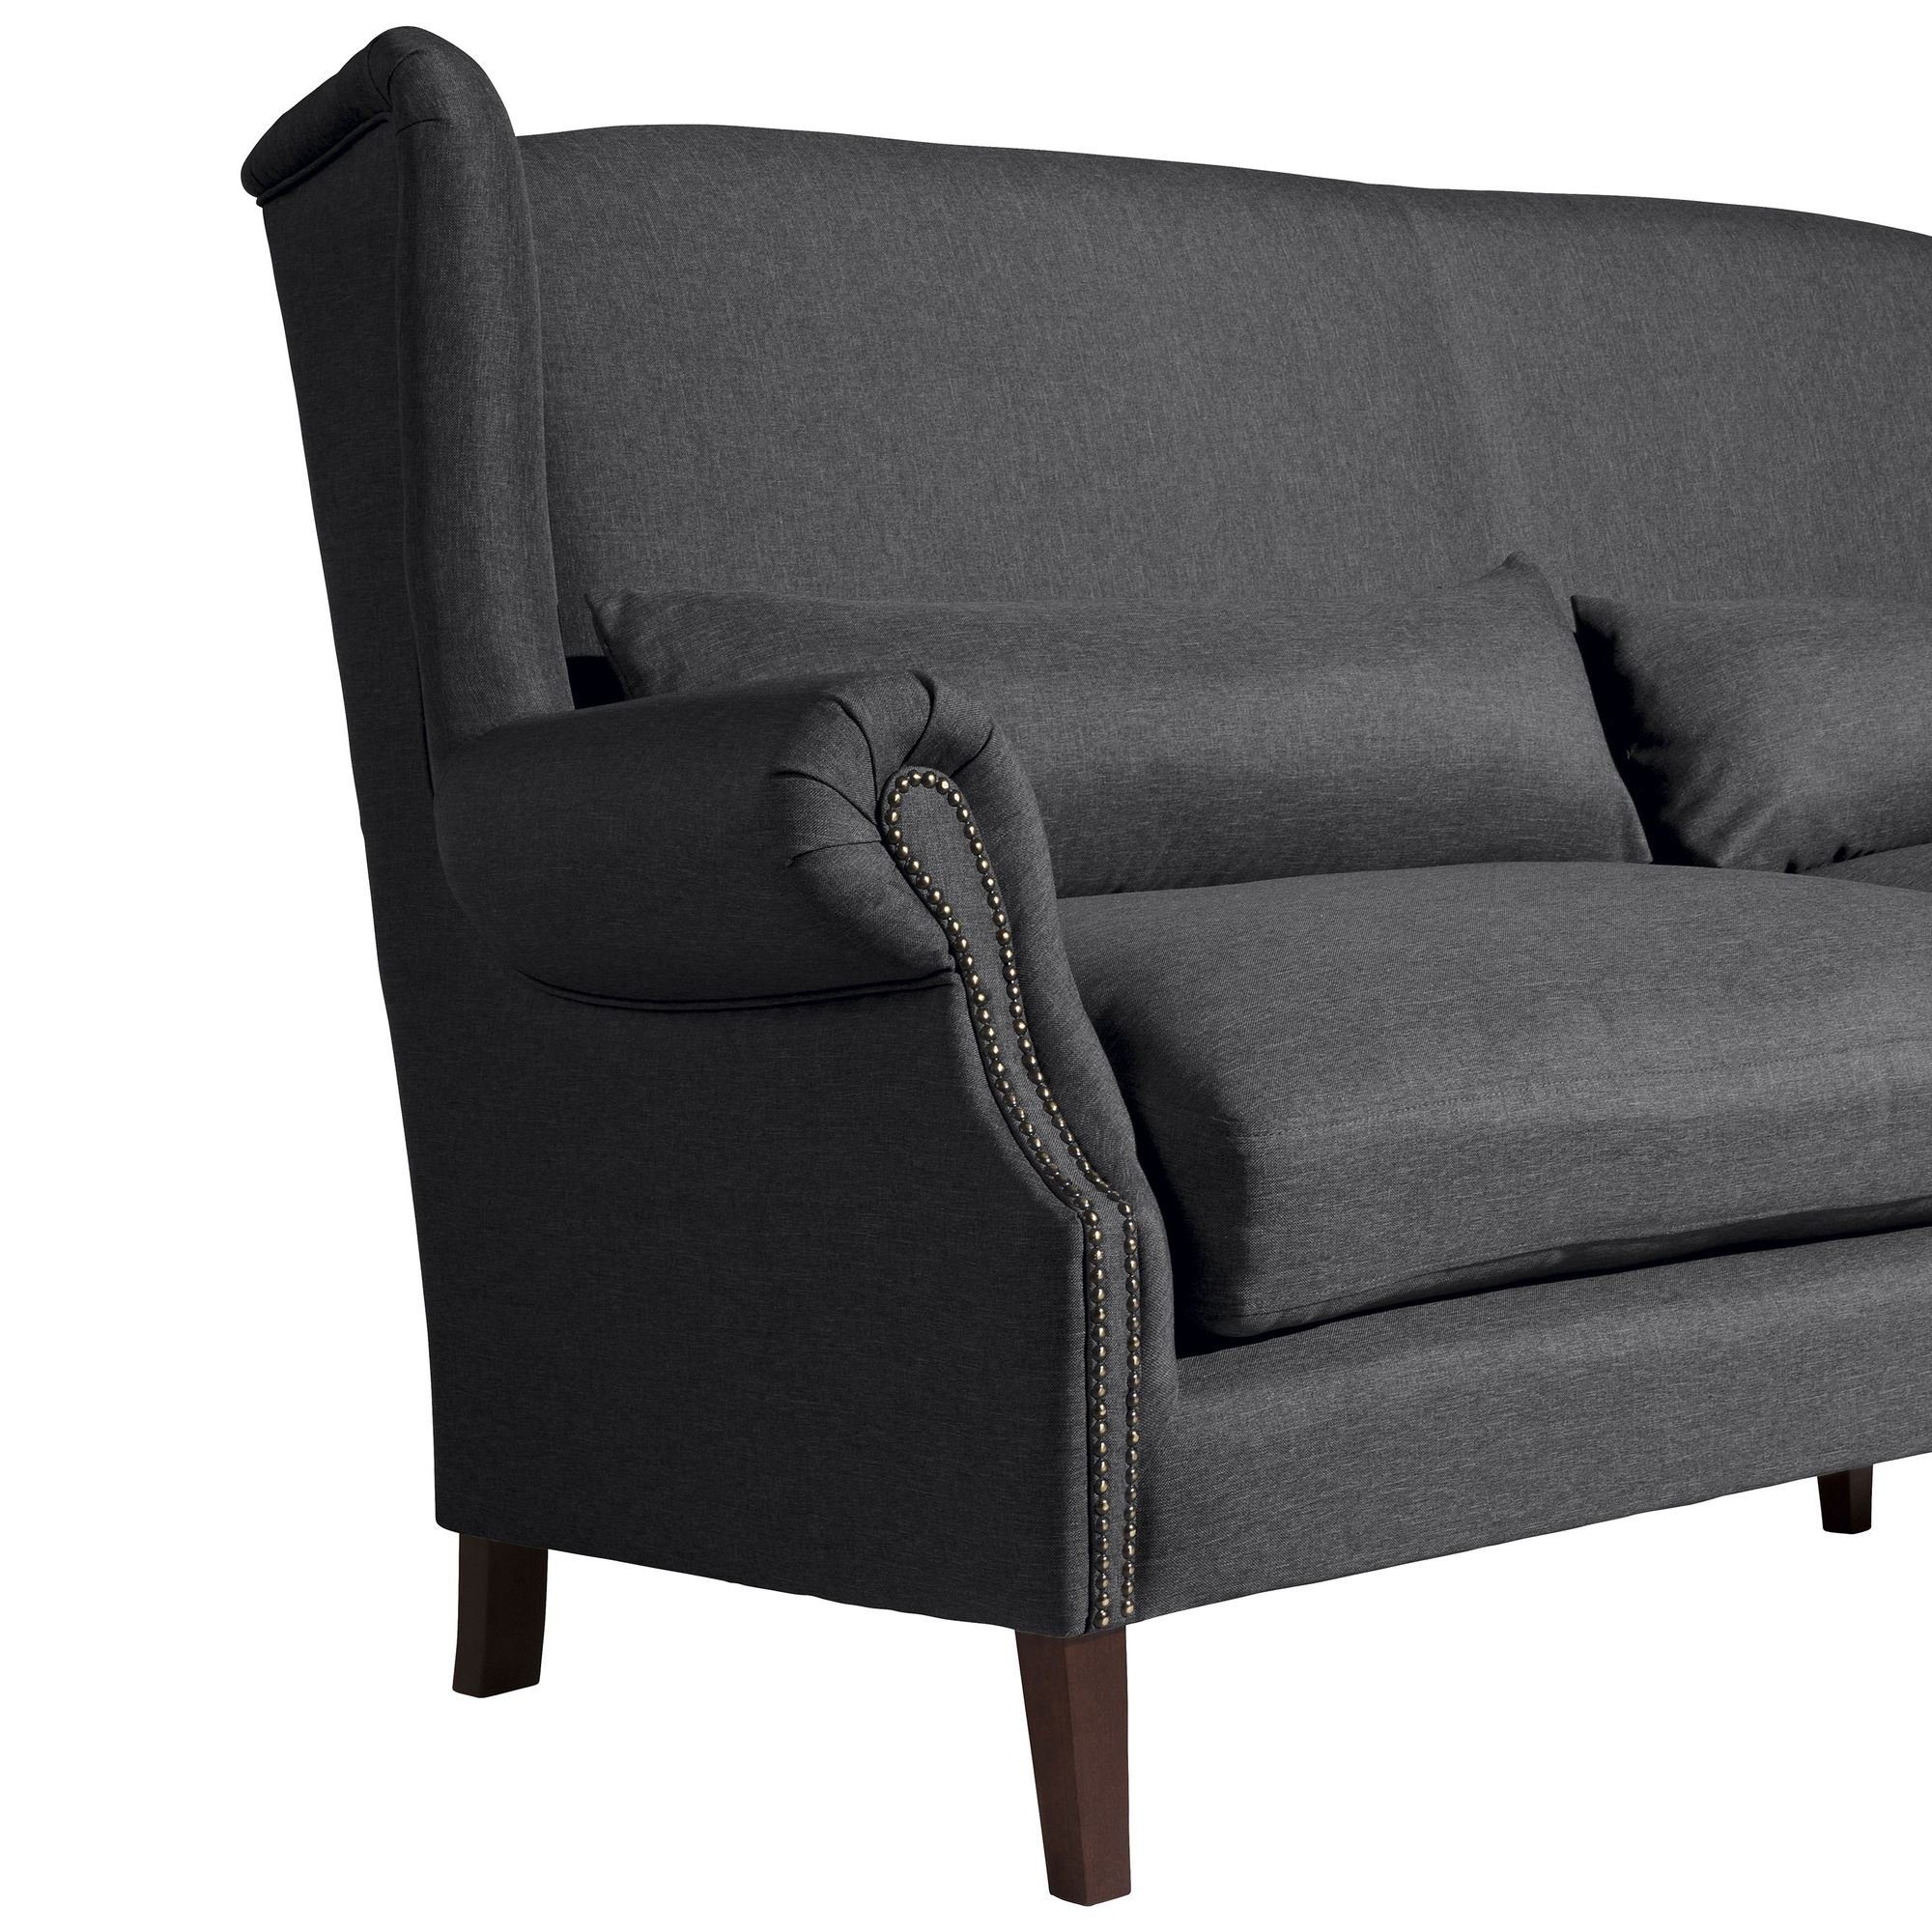 Sparpreis Sitz Sofa inkl. Bezug Flachgewebe, Kessel Kandy Teile, 58 verarbeitet,bequemer aufm 1 Sofa Kostenlosem (2-geteilt) 3-Sitzer Versand hochwertig